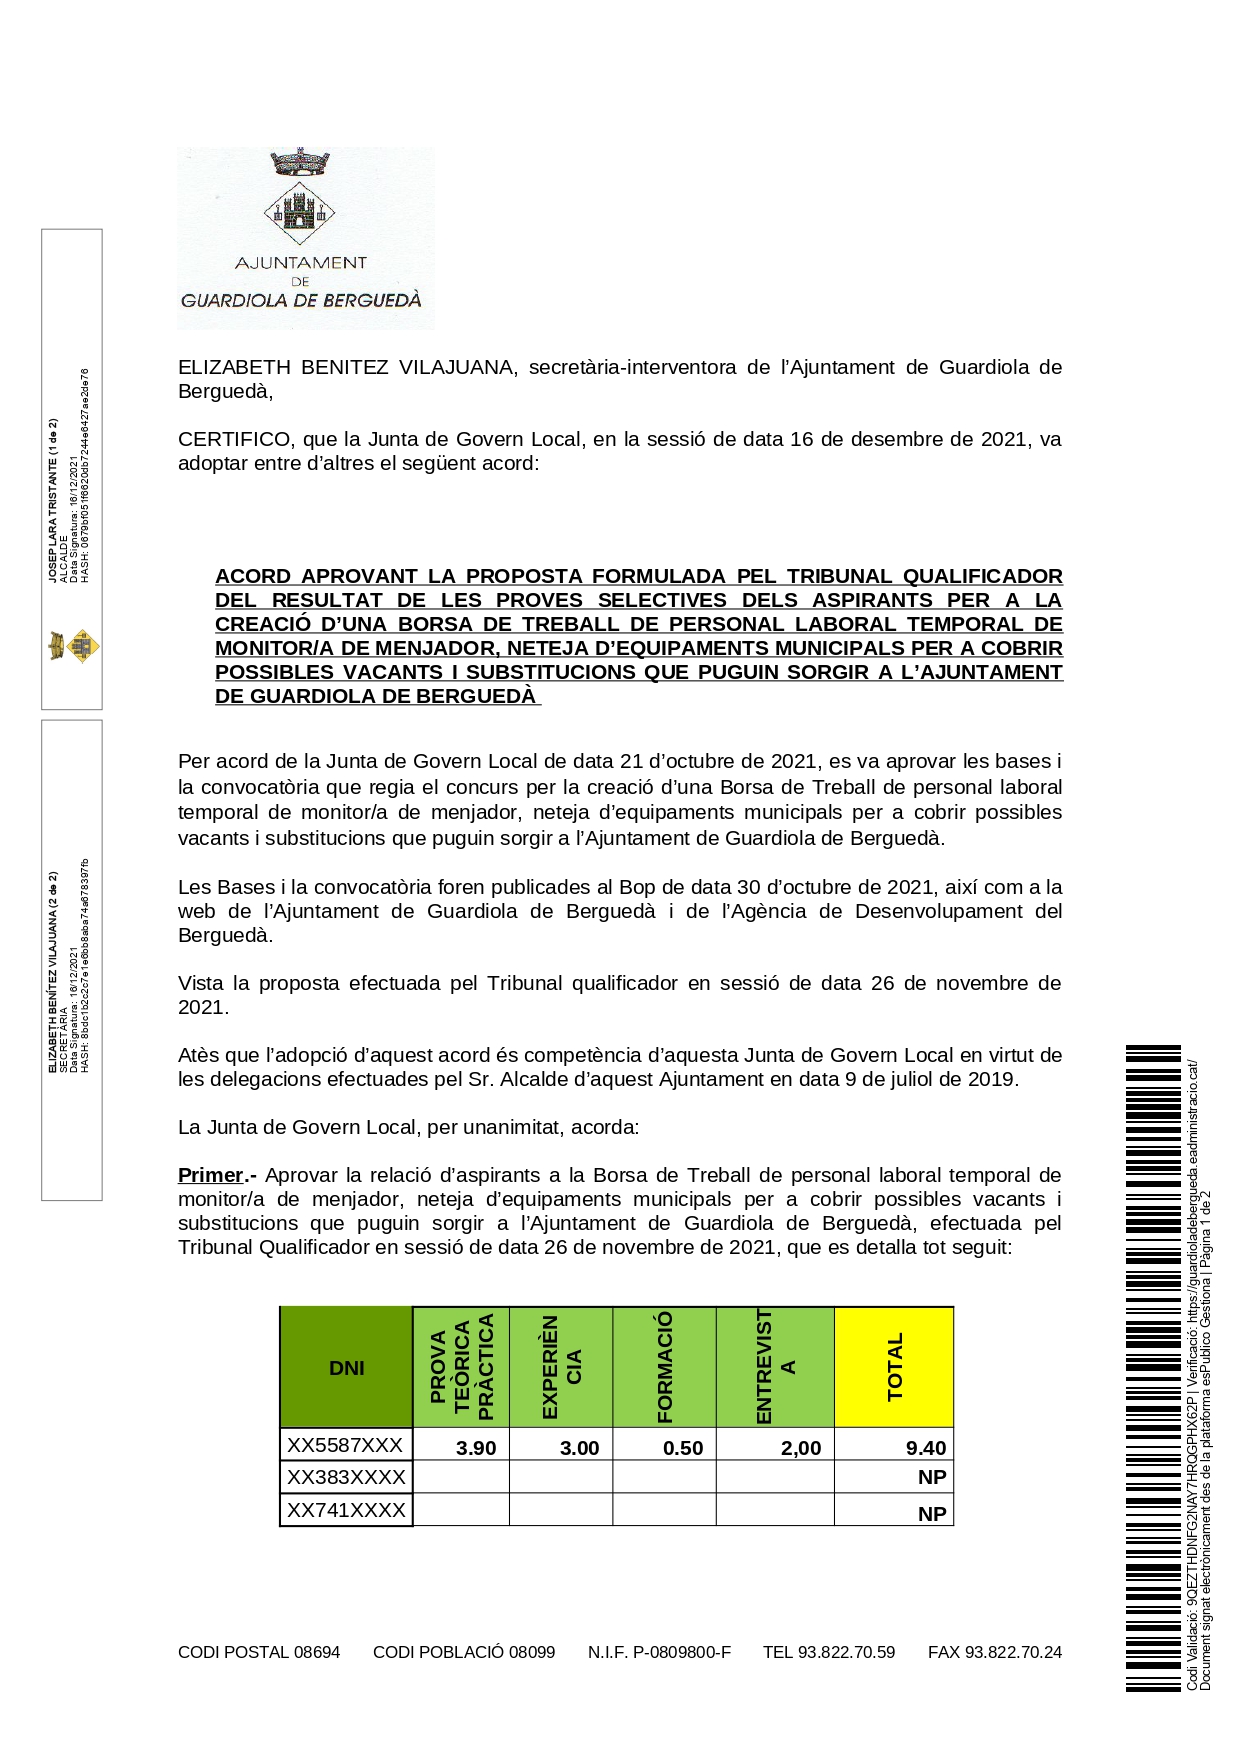 Certificat de l'Acord de la Junta de Govern del 16/12/2021